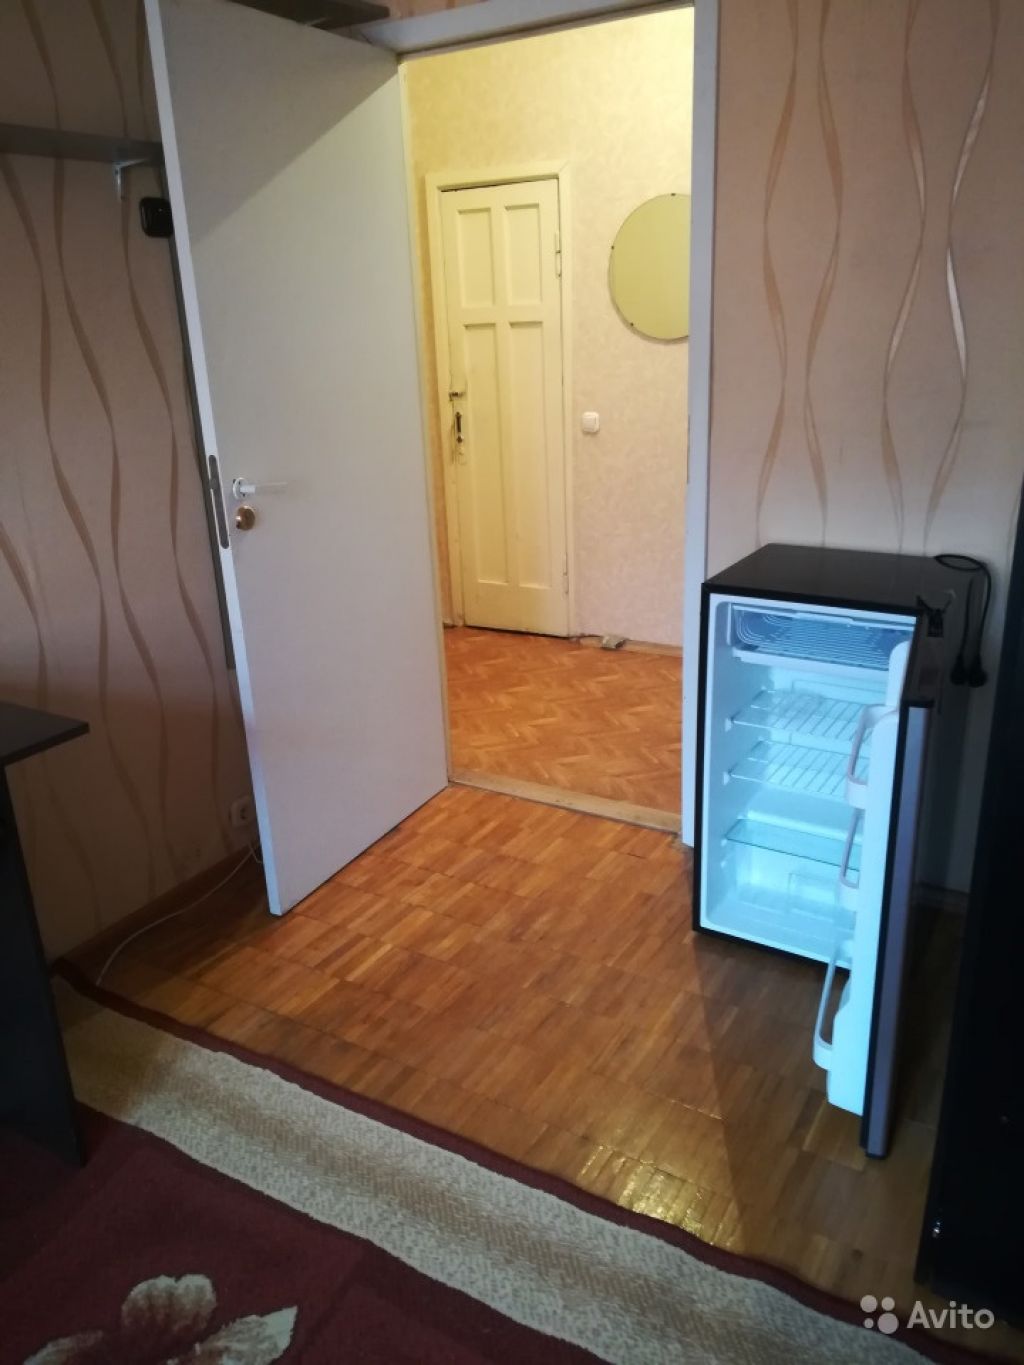 Продам комнату Комната 9.1 м² в 3-к квартире на 4 этаже 4-этажного панельного дома в Москве. Фото 1